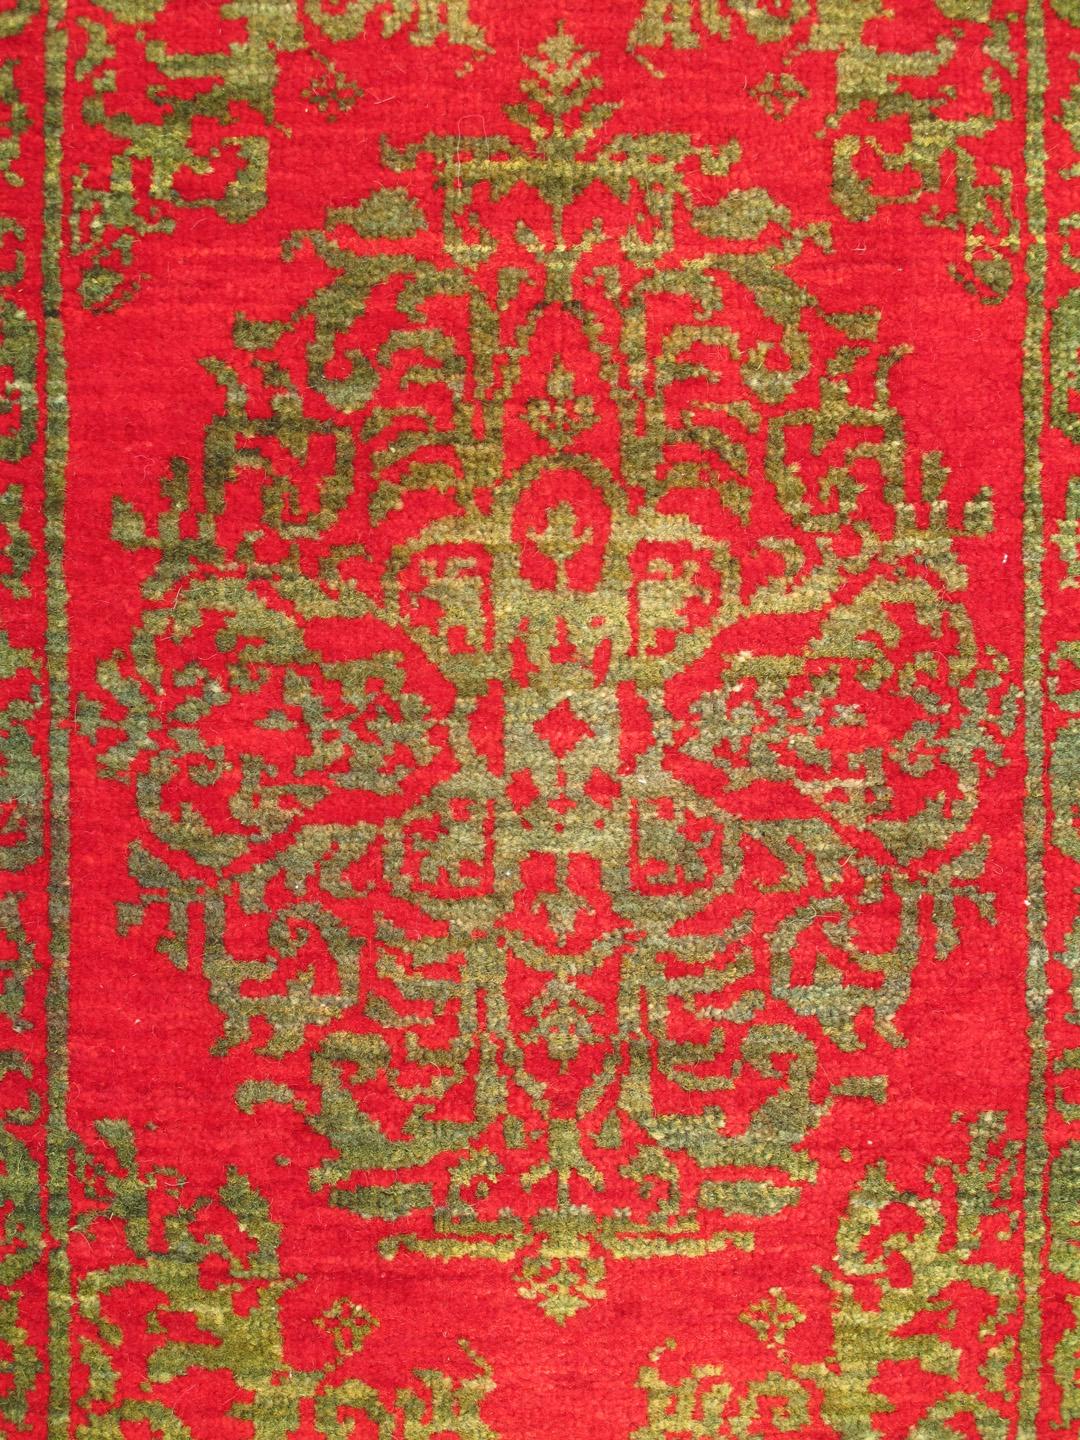 Antiker türkischer osmanischer Teppich mit Blumenmedaillon in Rot und Grün, Keivan Woven Arts Teppich TU-VEY-8, Herkunftsland / Typ: Türkei / Osmanisch, um 1920

Der in der Türkei handgewebte antike osmanische Teppich besticht durch eine